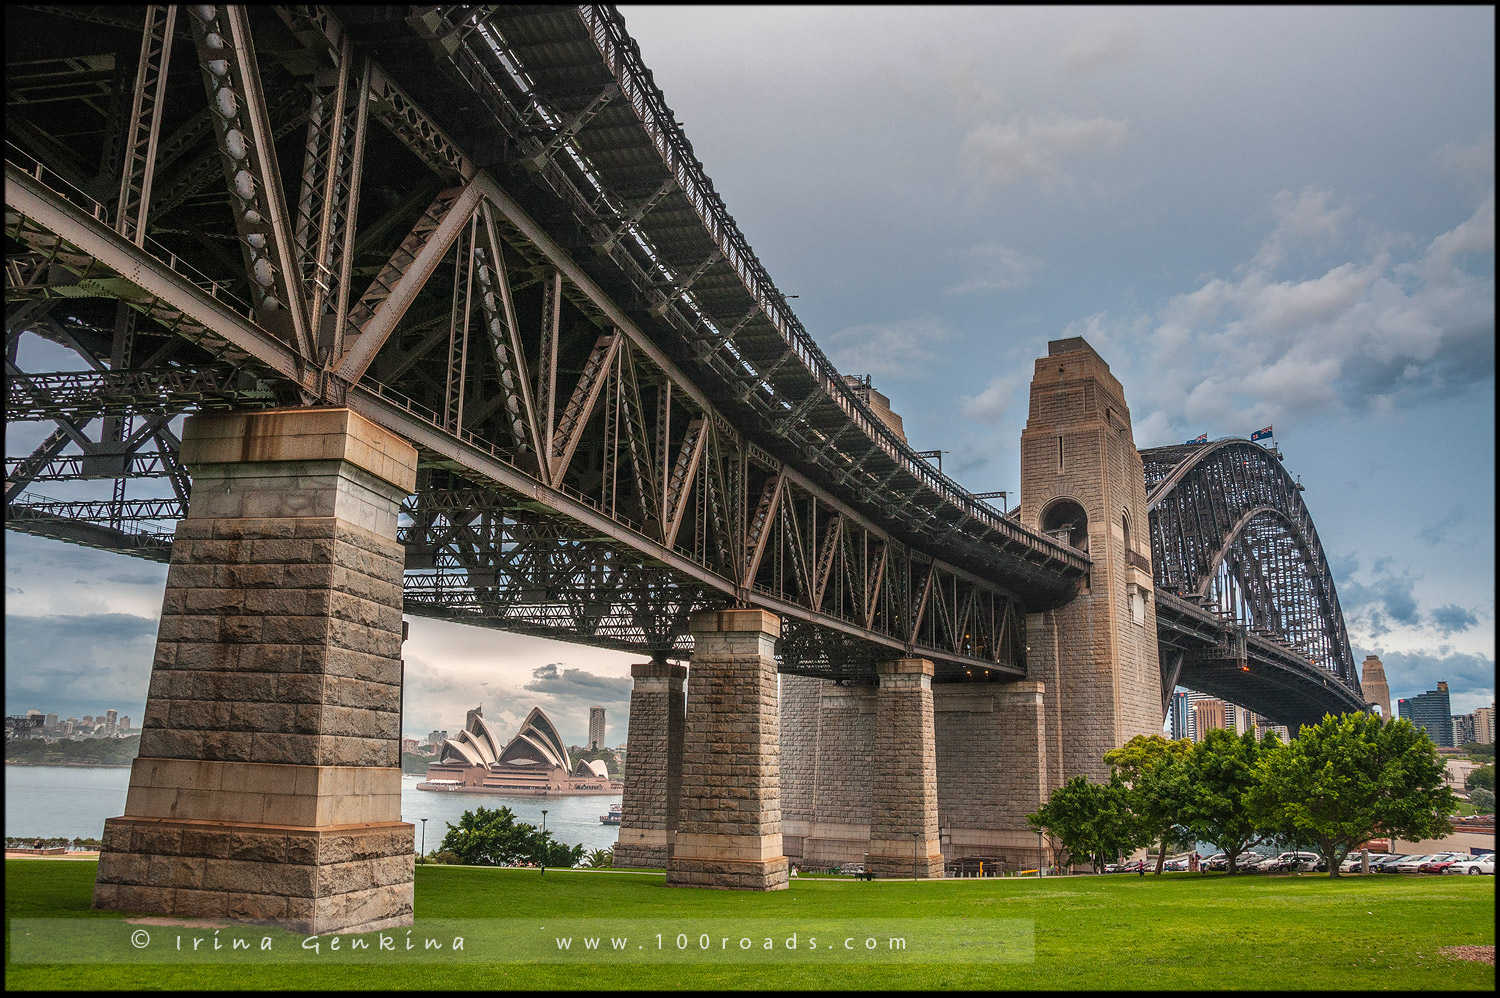 Достопримечательности Сиднея - Мост Сиднейской Гавани (Sydney Harbour Bridge)